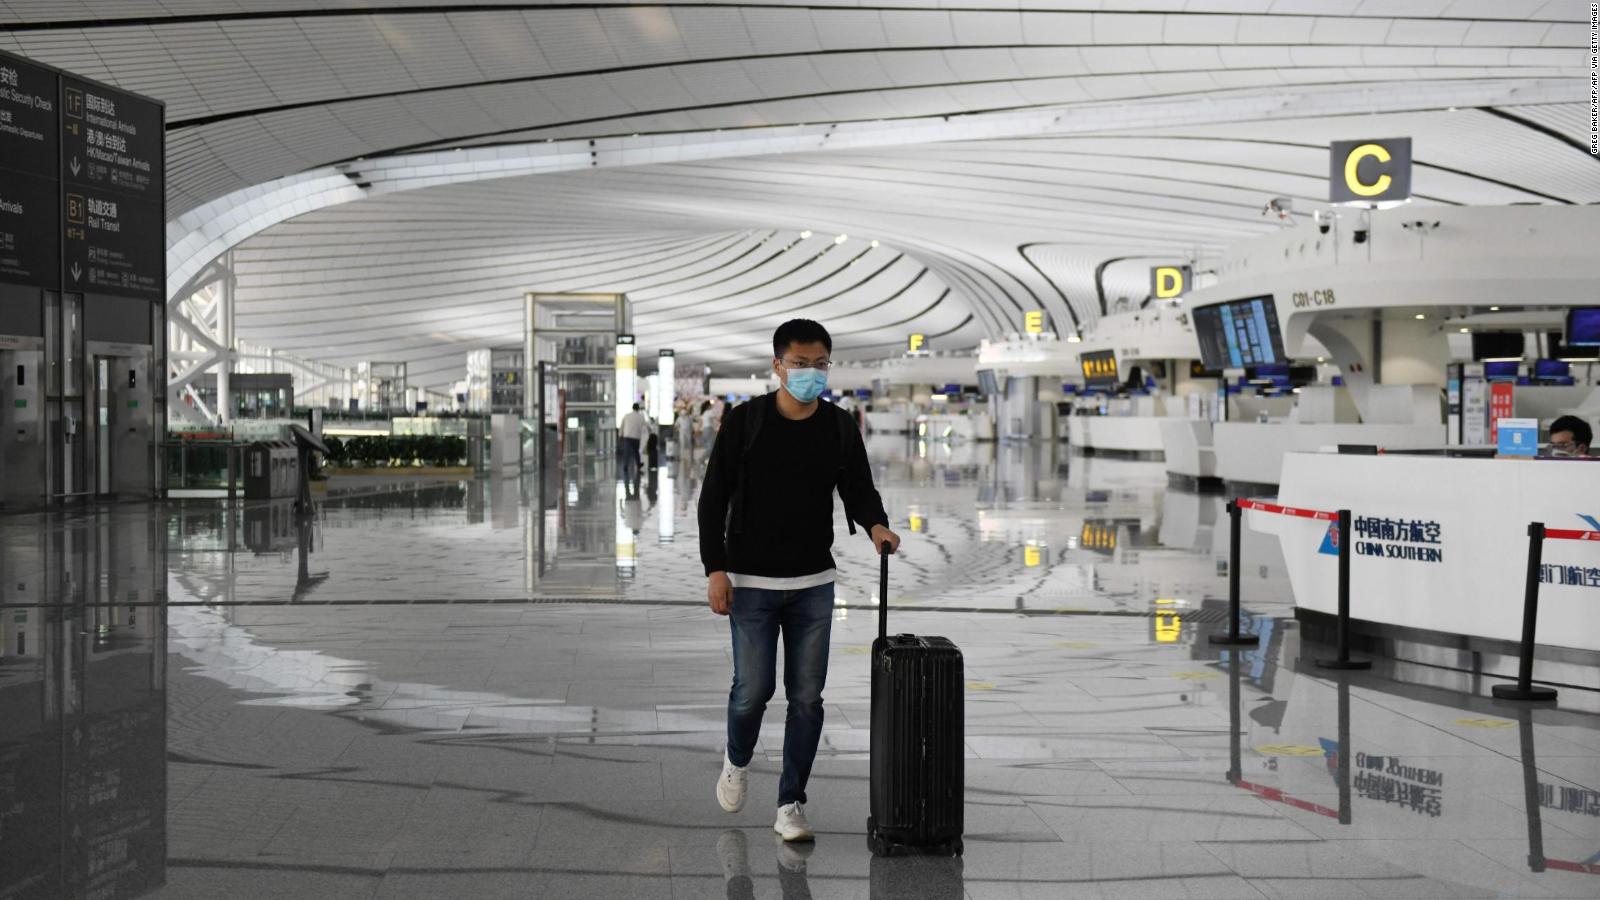 Coronavirus: ¿Cómo lucirán los aeropuertos en el futuro? | Video | CNN